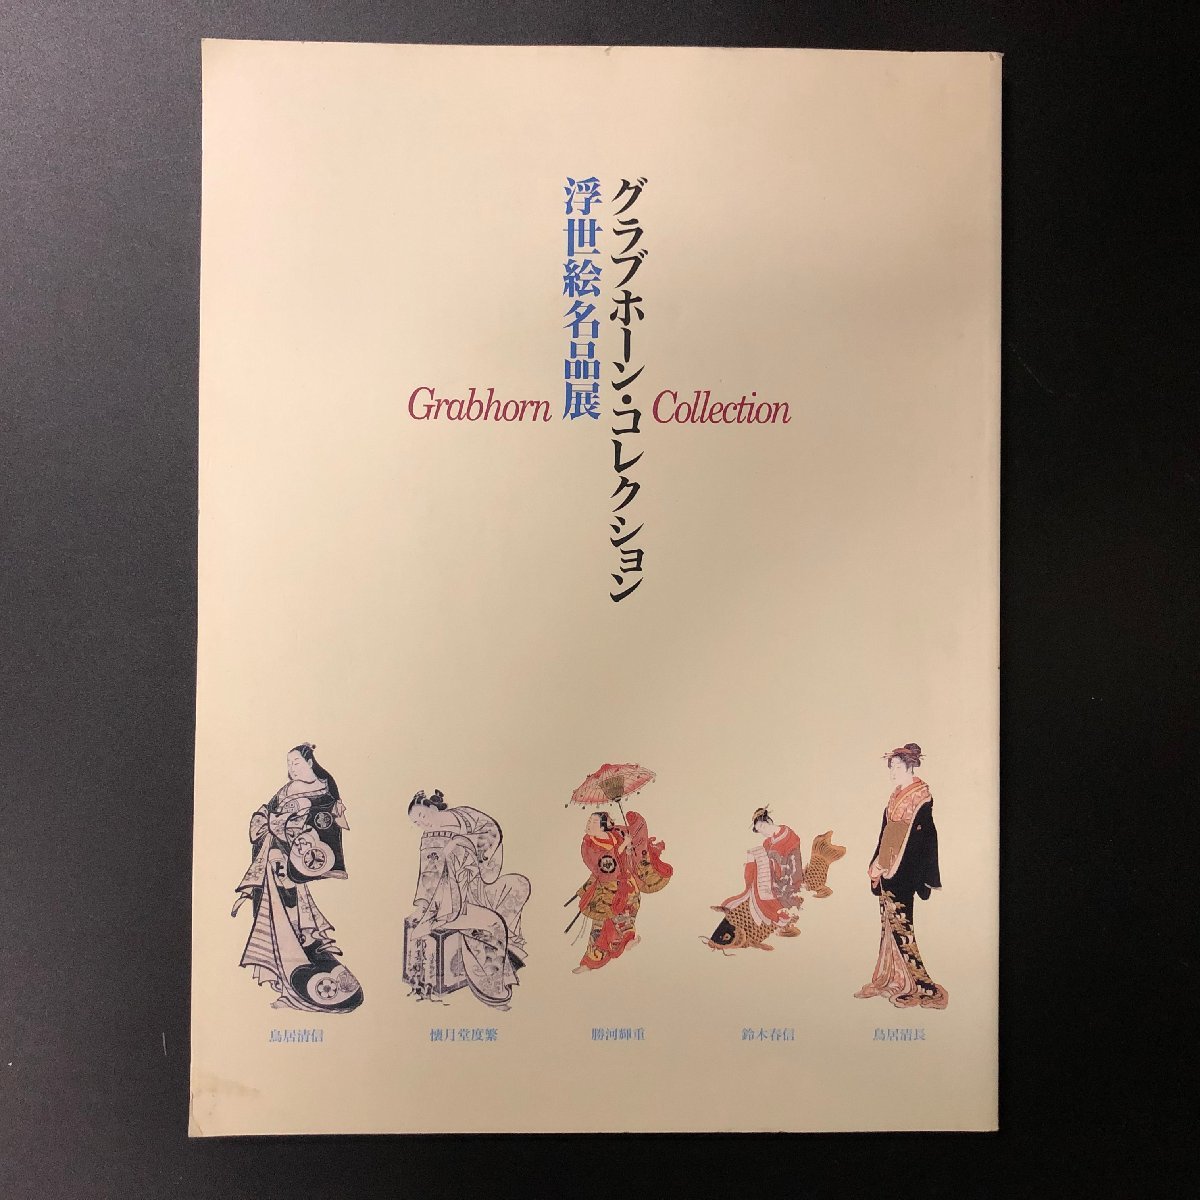 [Catalogue] Collection Grabhorn : Catalogue d'exposition des chefs-d'œuvre d'Ukiyo-e 1995, Peinture, Livre d'art, Collection, Catalogue